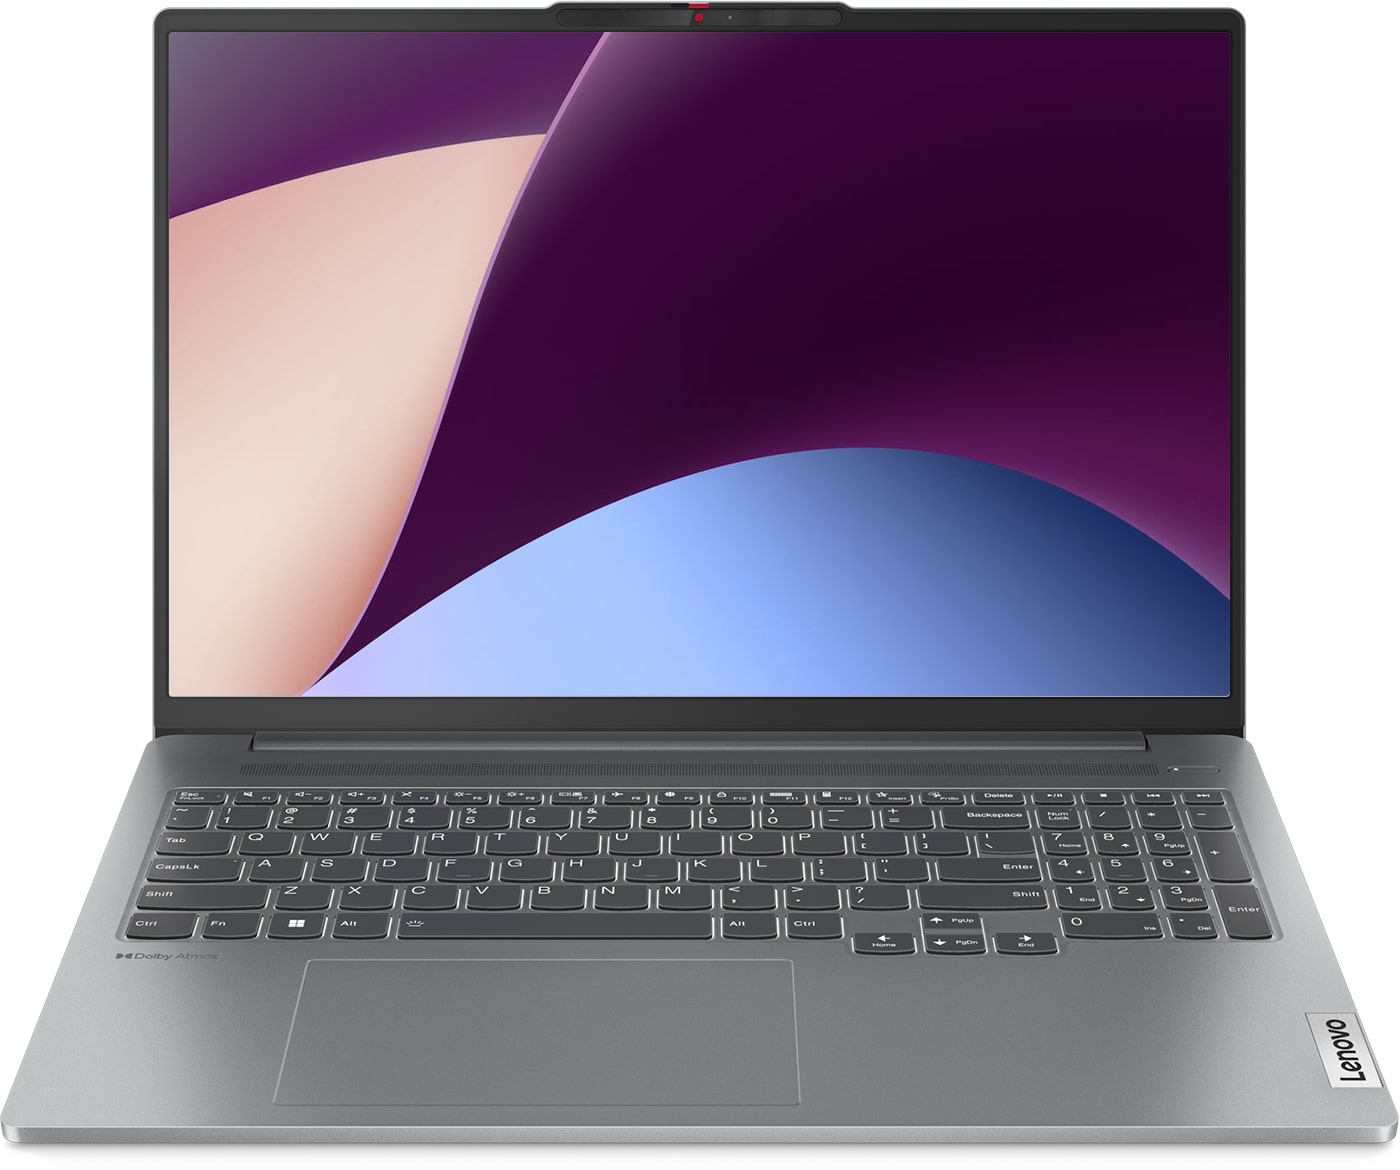 Ноутбук Lenovo IdeaPad Pro 5 Gen 8 Gray (83AS002WRK), купить в Москве, цены в интернет-магазинах на Мегамаркет